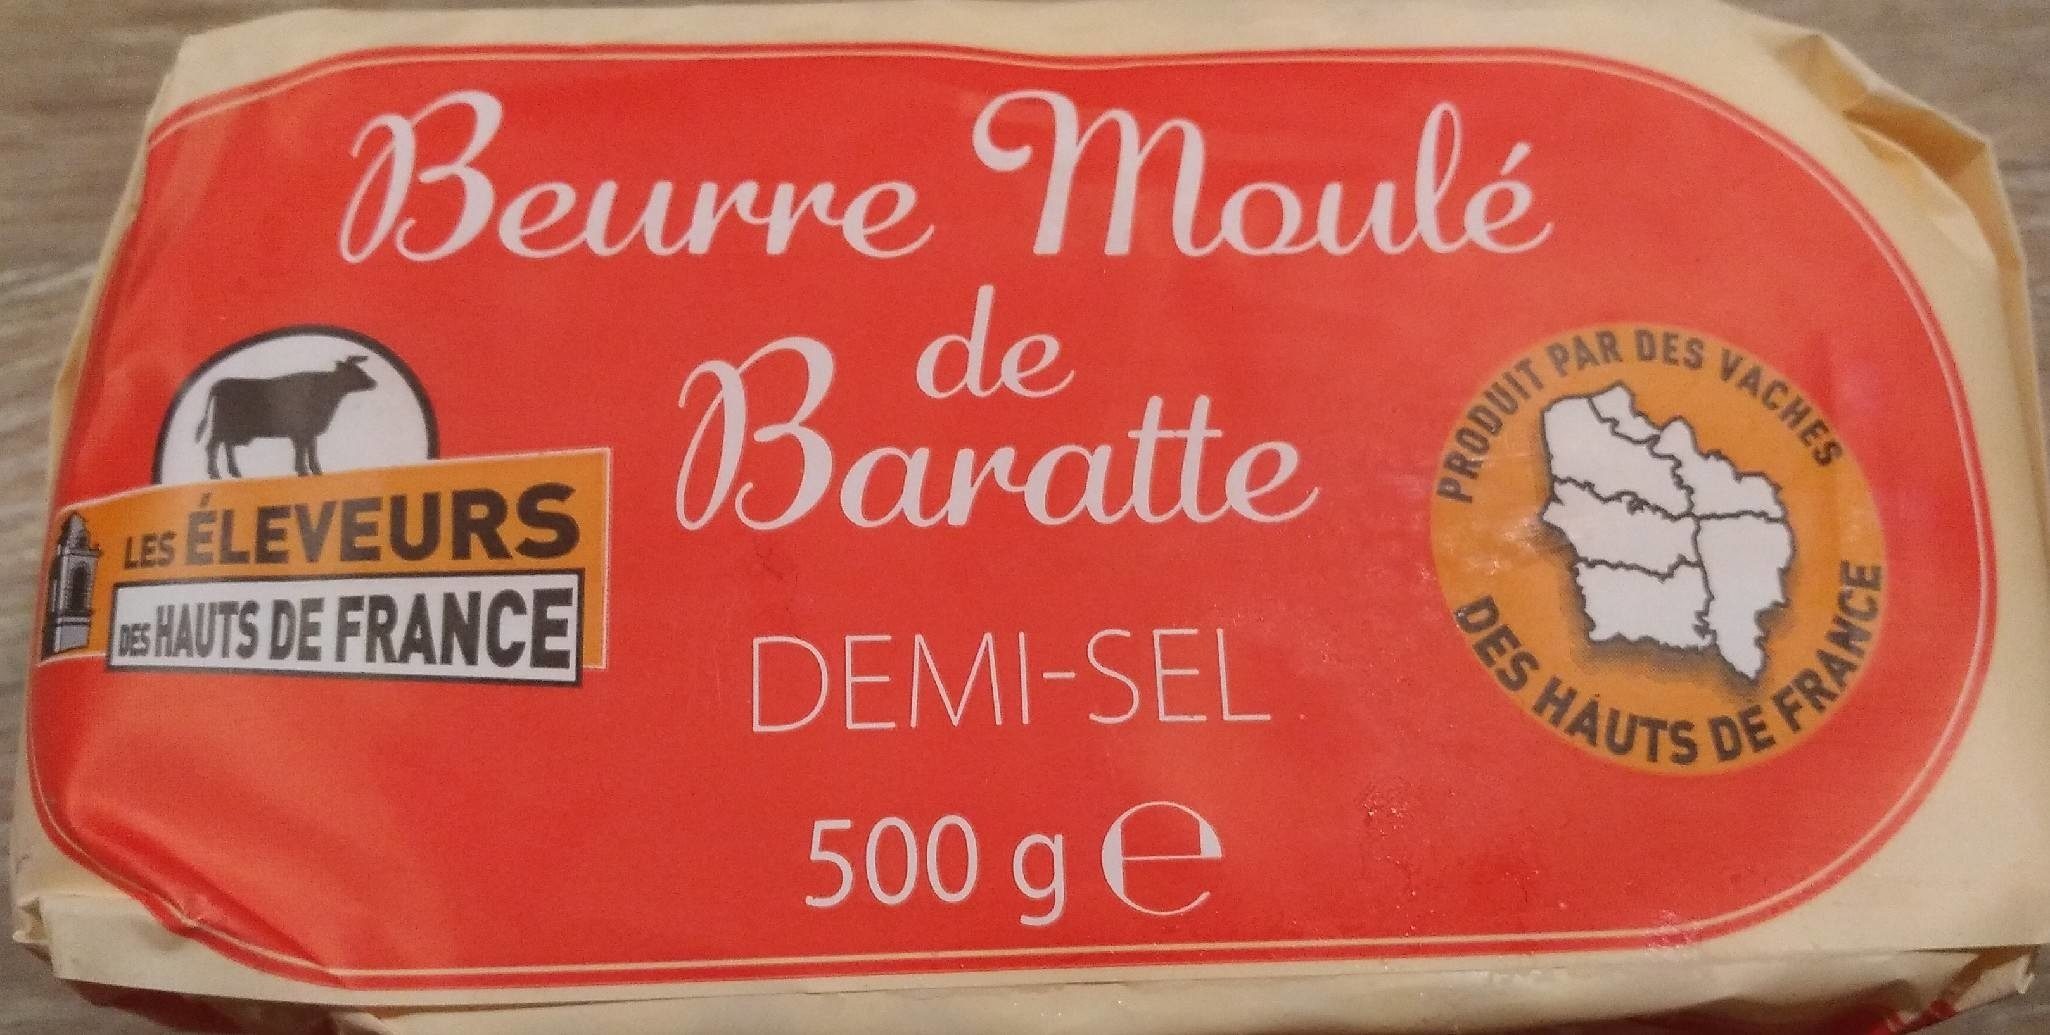 Beurre moulé de baratte demi sel - Product - fr